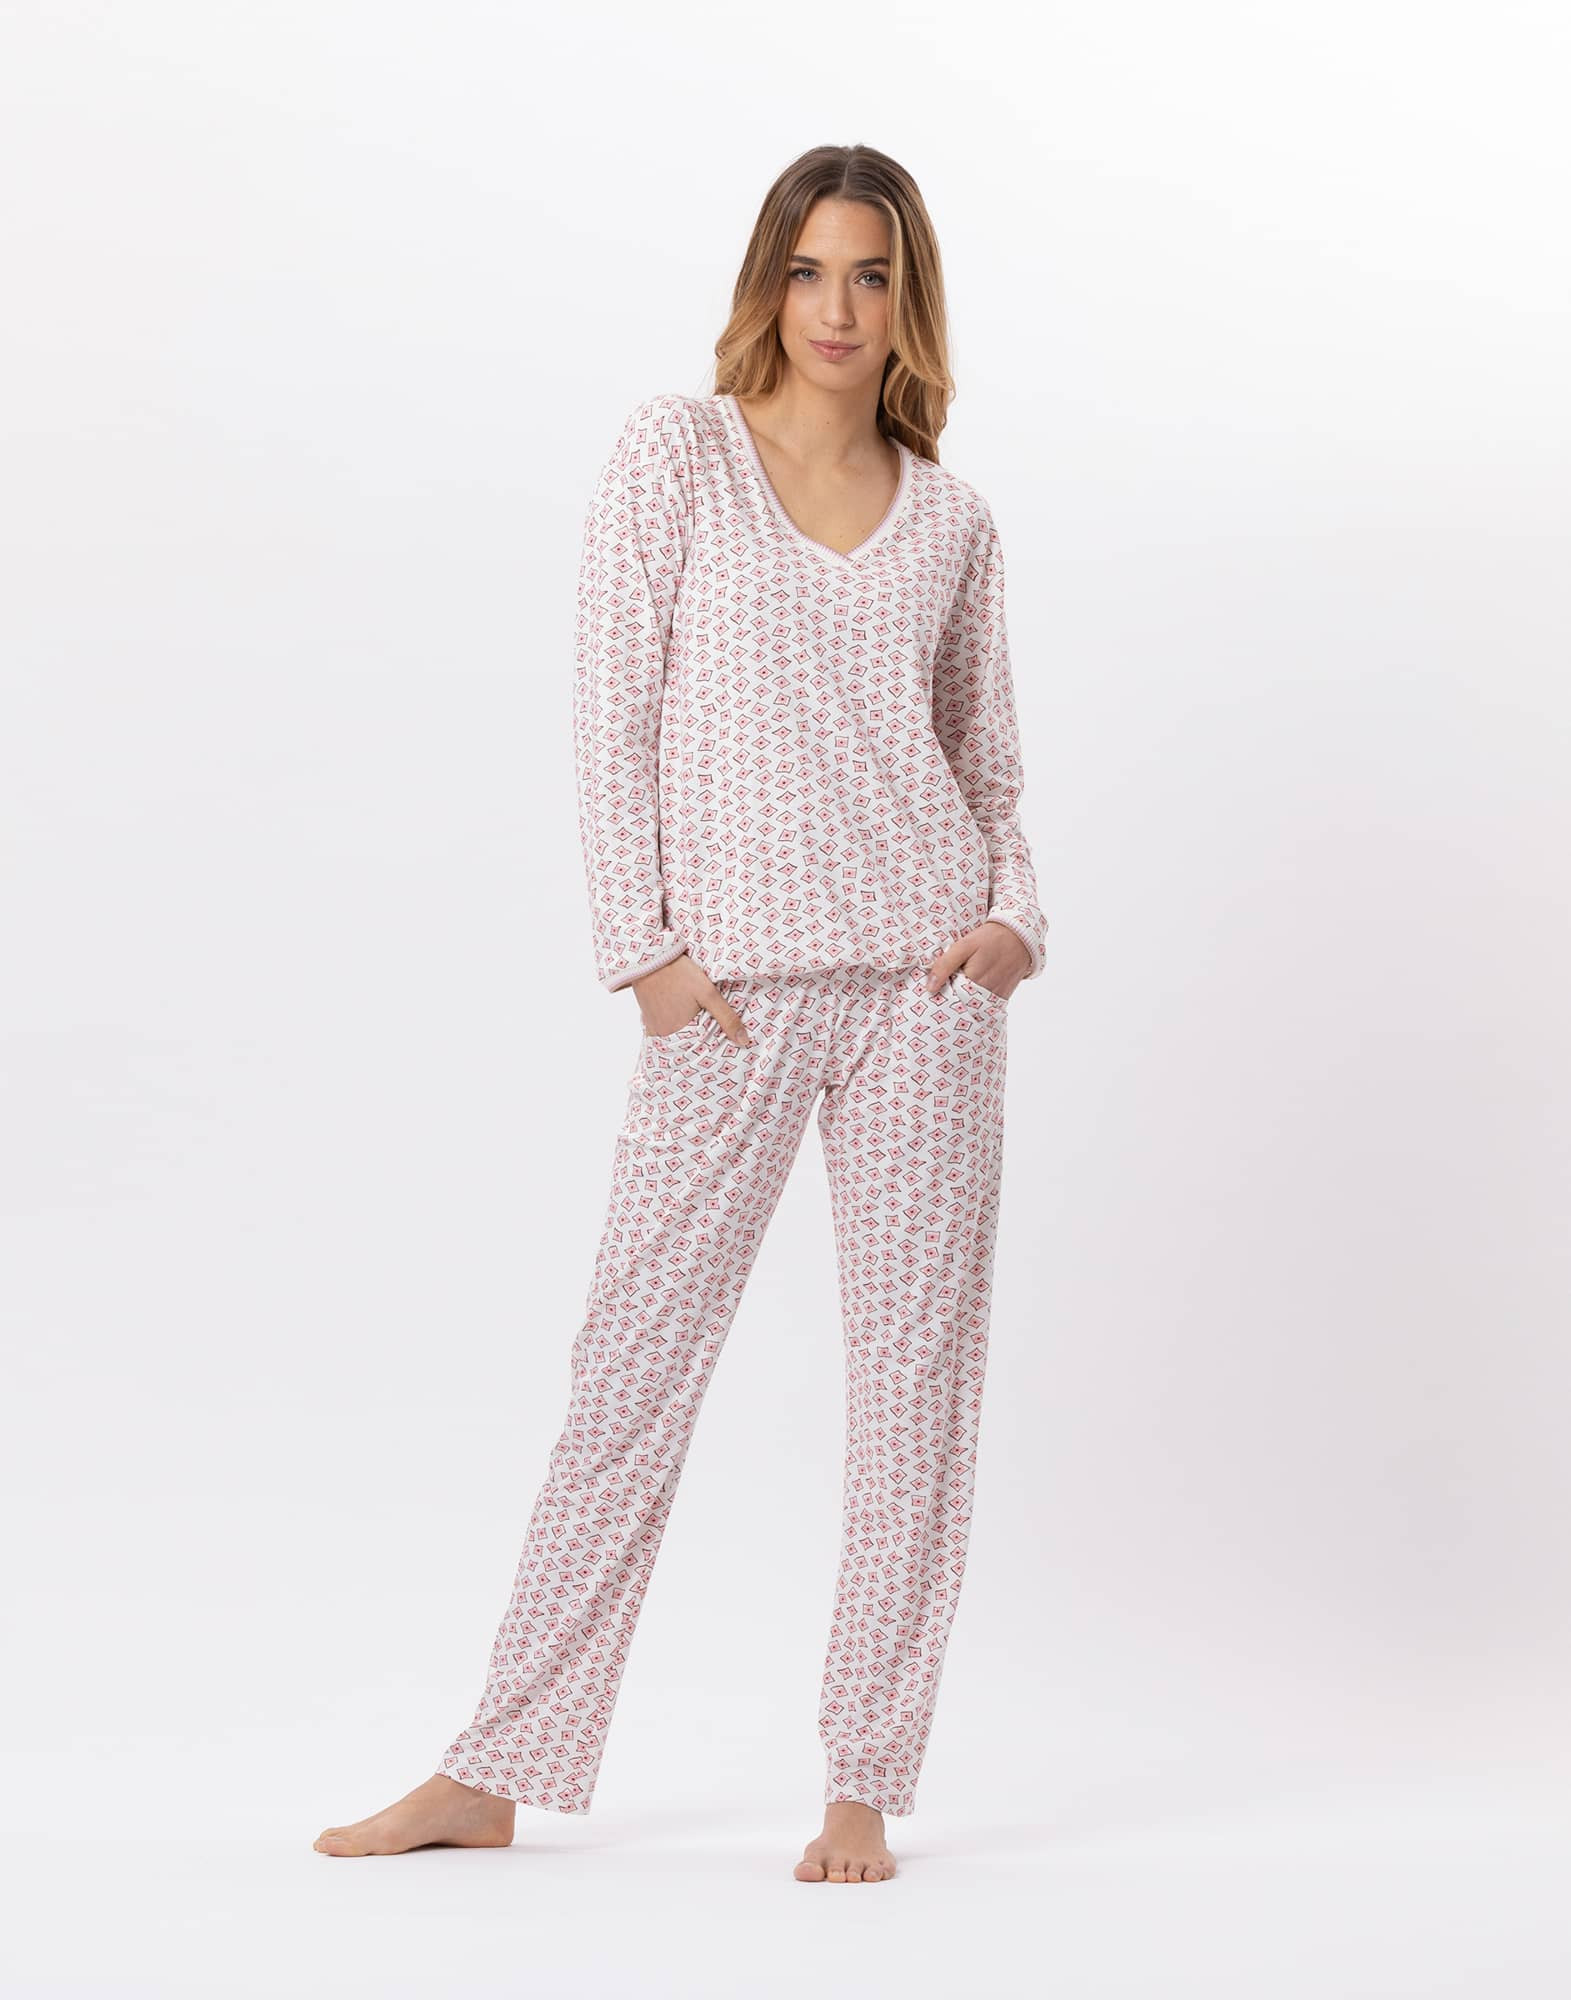 Cotton pyjamas AURORE 802 Multico | Lingerie le Chat